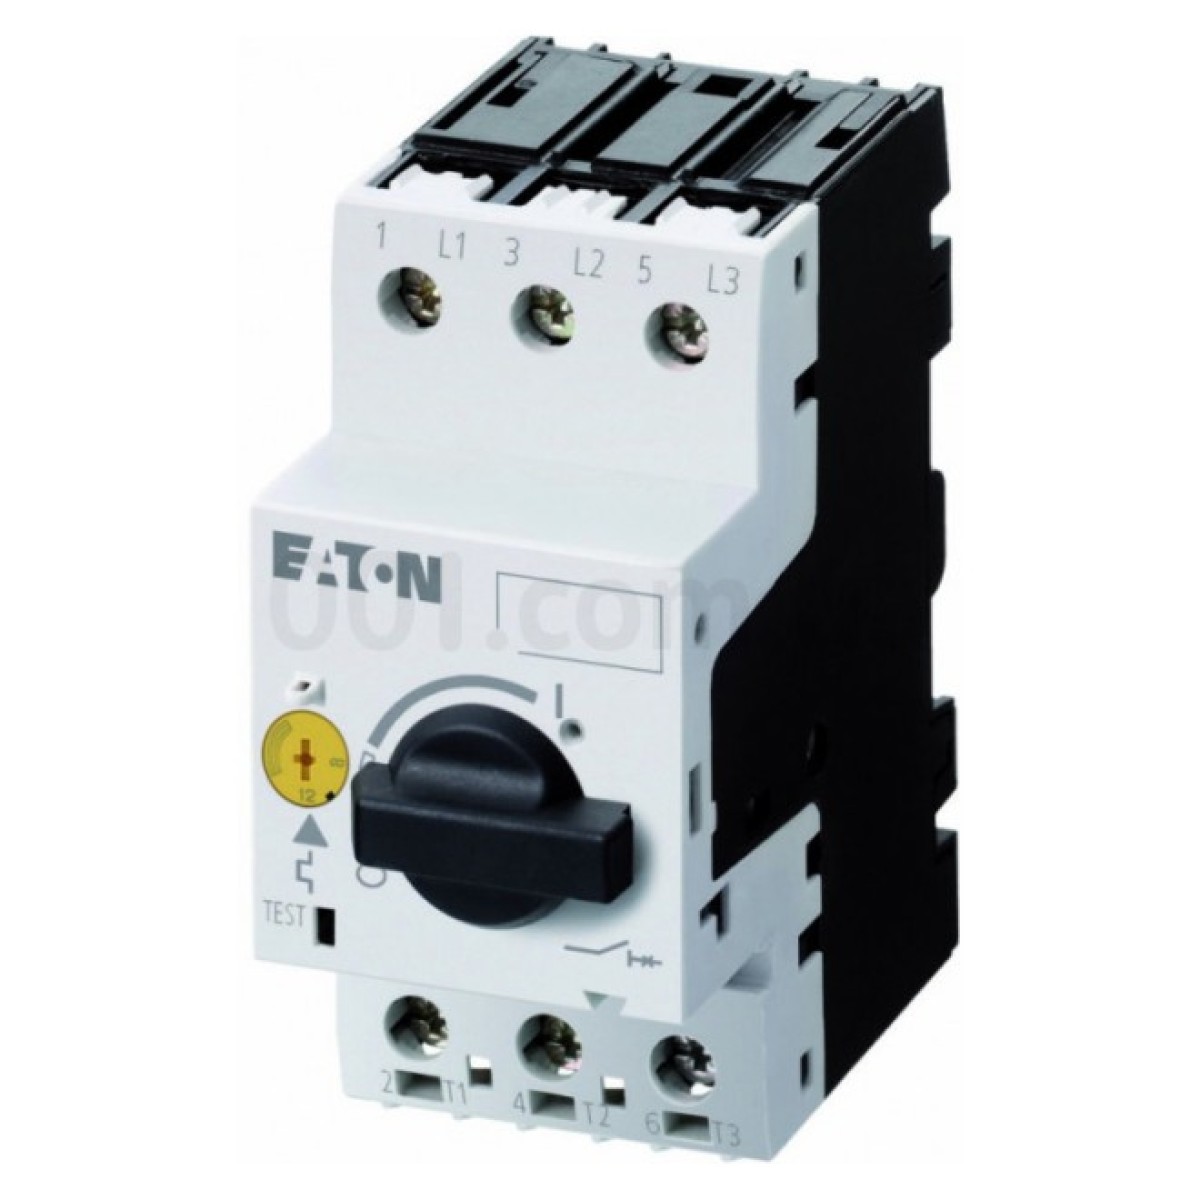 Автоматический выключатель защиты двигателя PKZM0-0,4 Ir=0,25...0,4А, Eaton (Moeller) 256_256.jpg